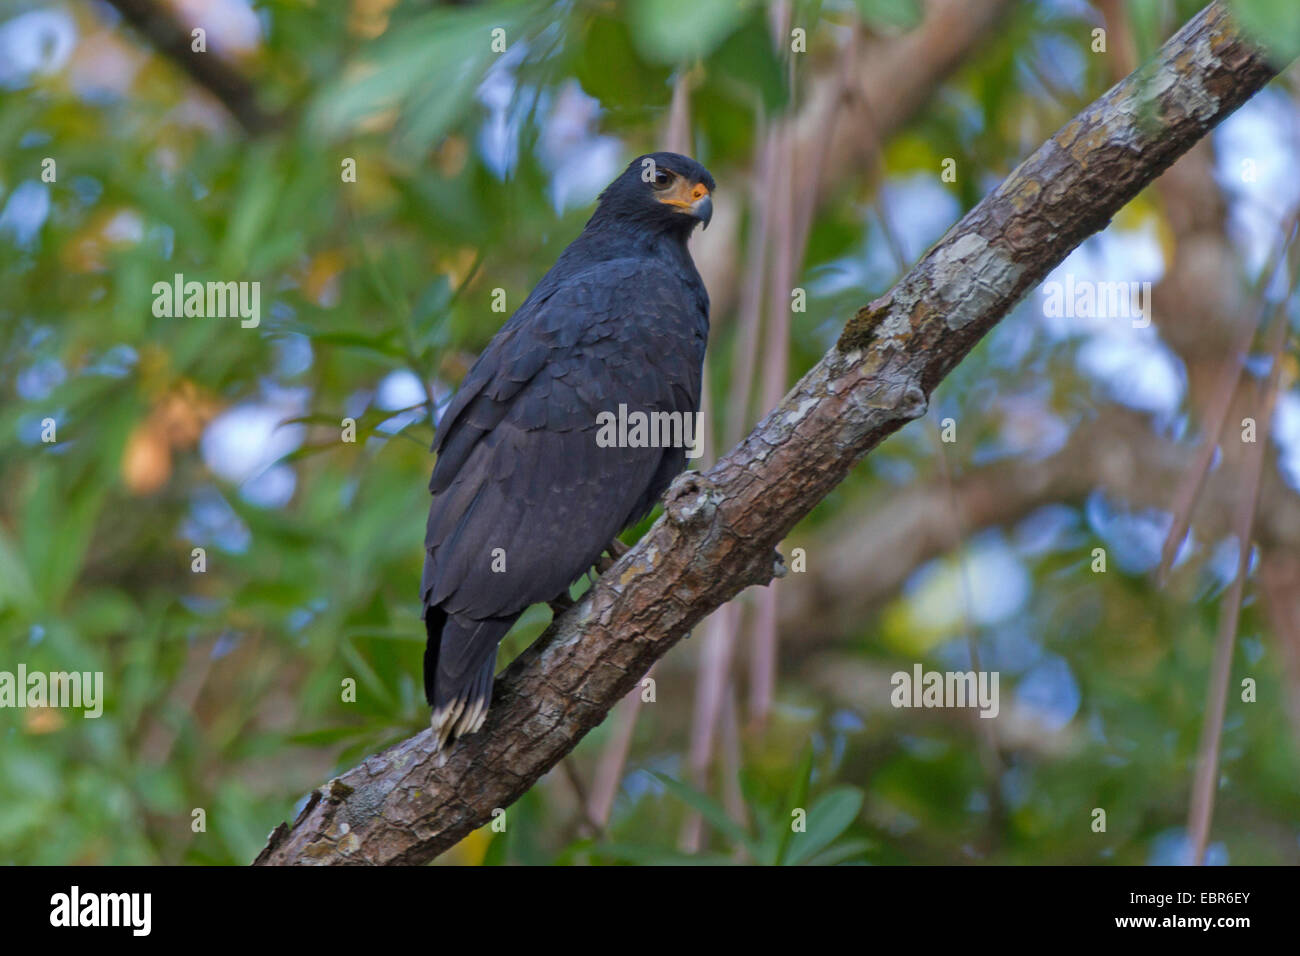 Black Hawk de manglar (Buteogallus anthracinus subtili), sentado en una rama de un árbol, Costa Rica, Río Tárcoles Foto de stock